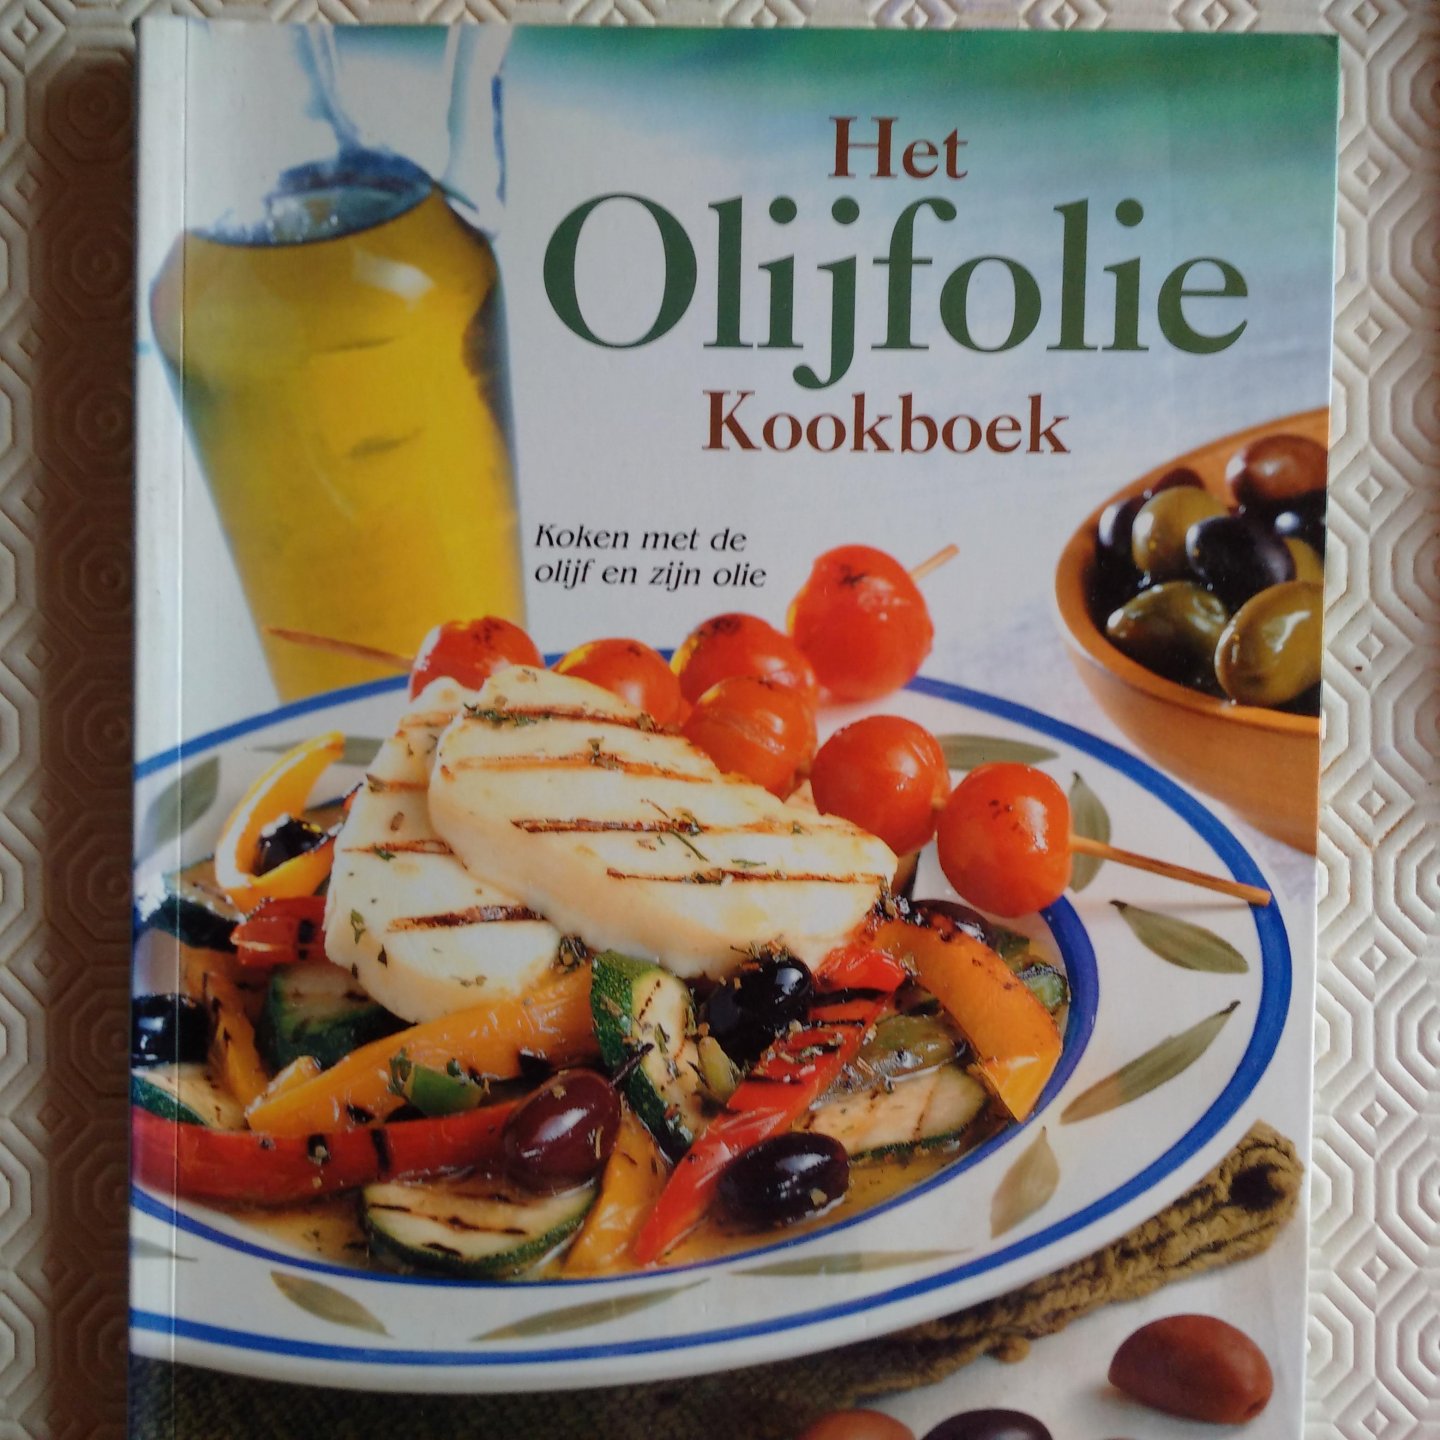 Spieler, Marlena - Het olijfolie kookboek